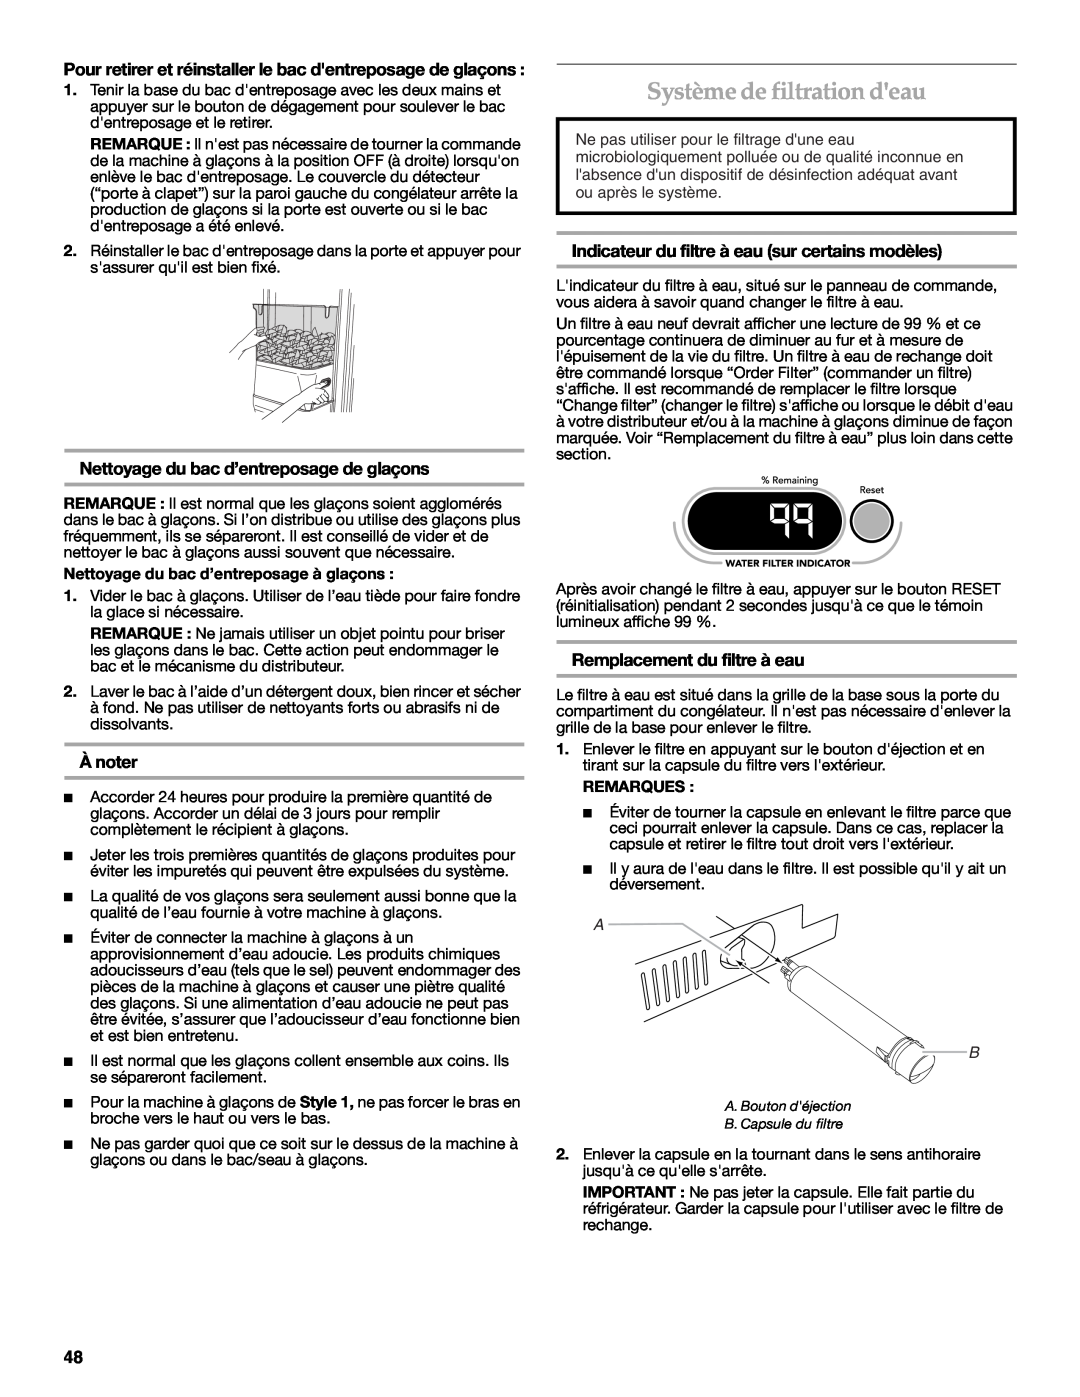 KitchenAid KSSC48QVS, W10303989A manual Système de filtration deau, Nettoyage du bac d’entreposage de glaçons, À noter 